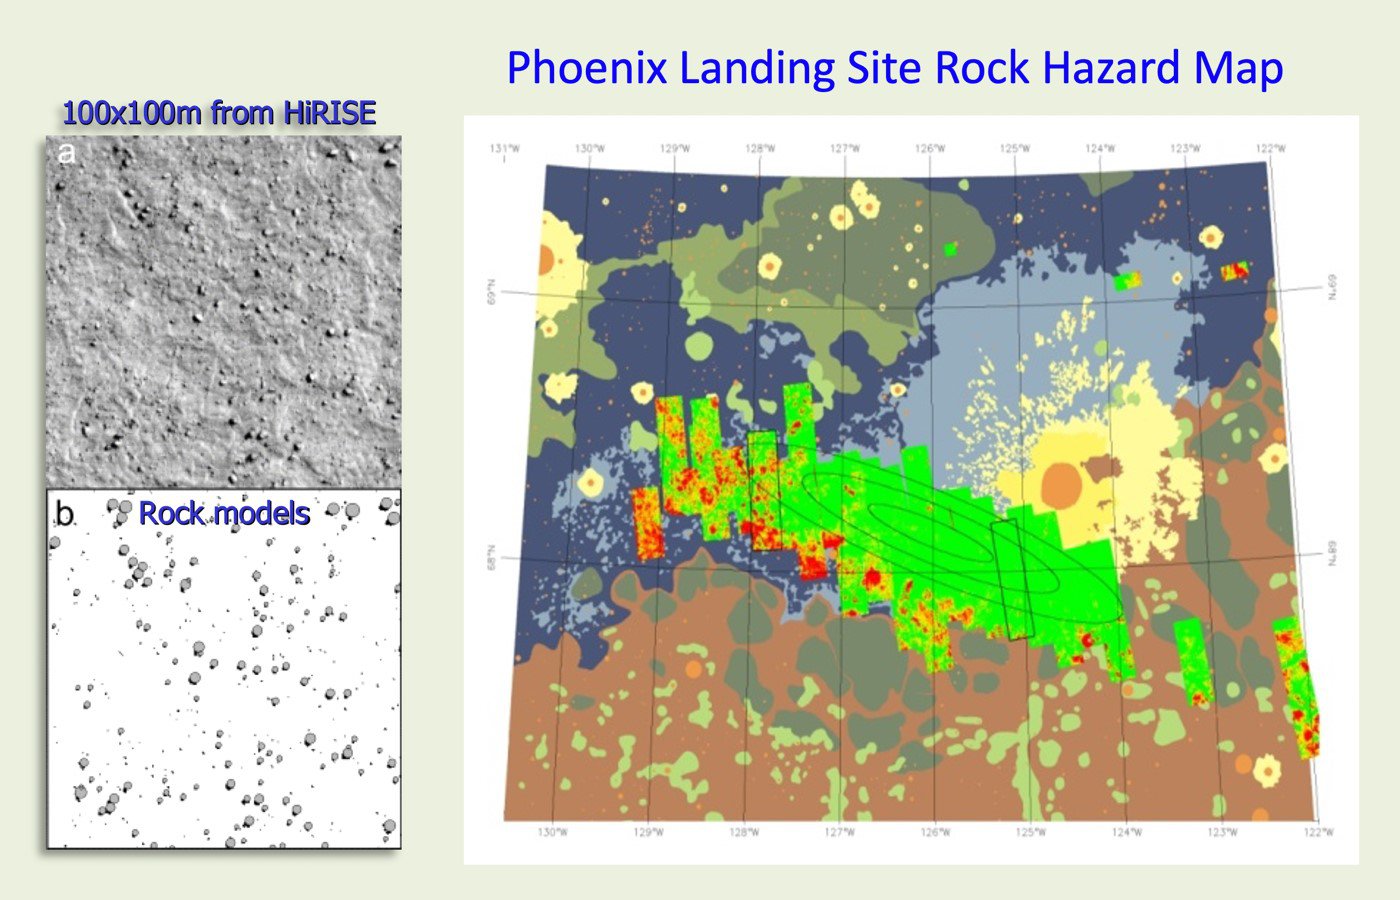 Phoenix_Landing_Site_Rock_Hazard_Map.jpg